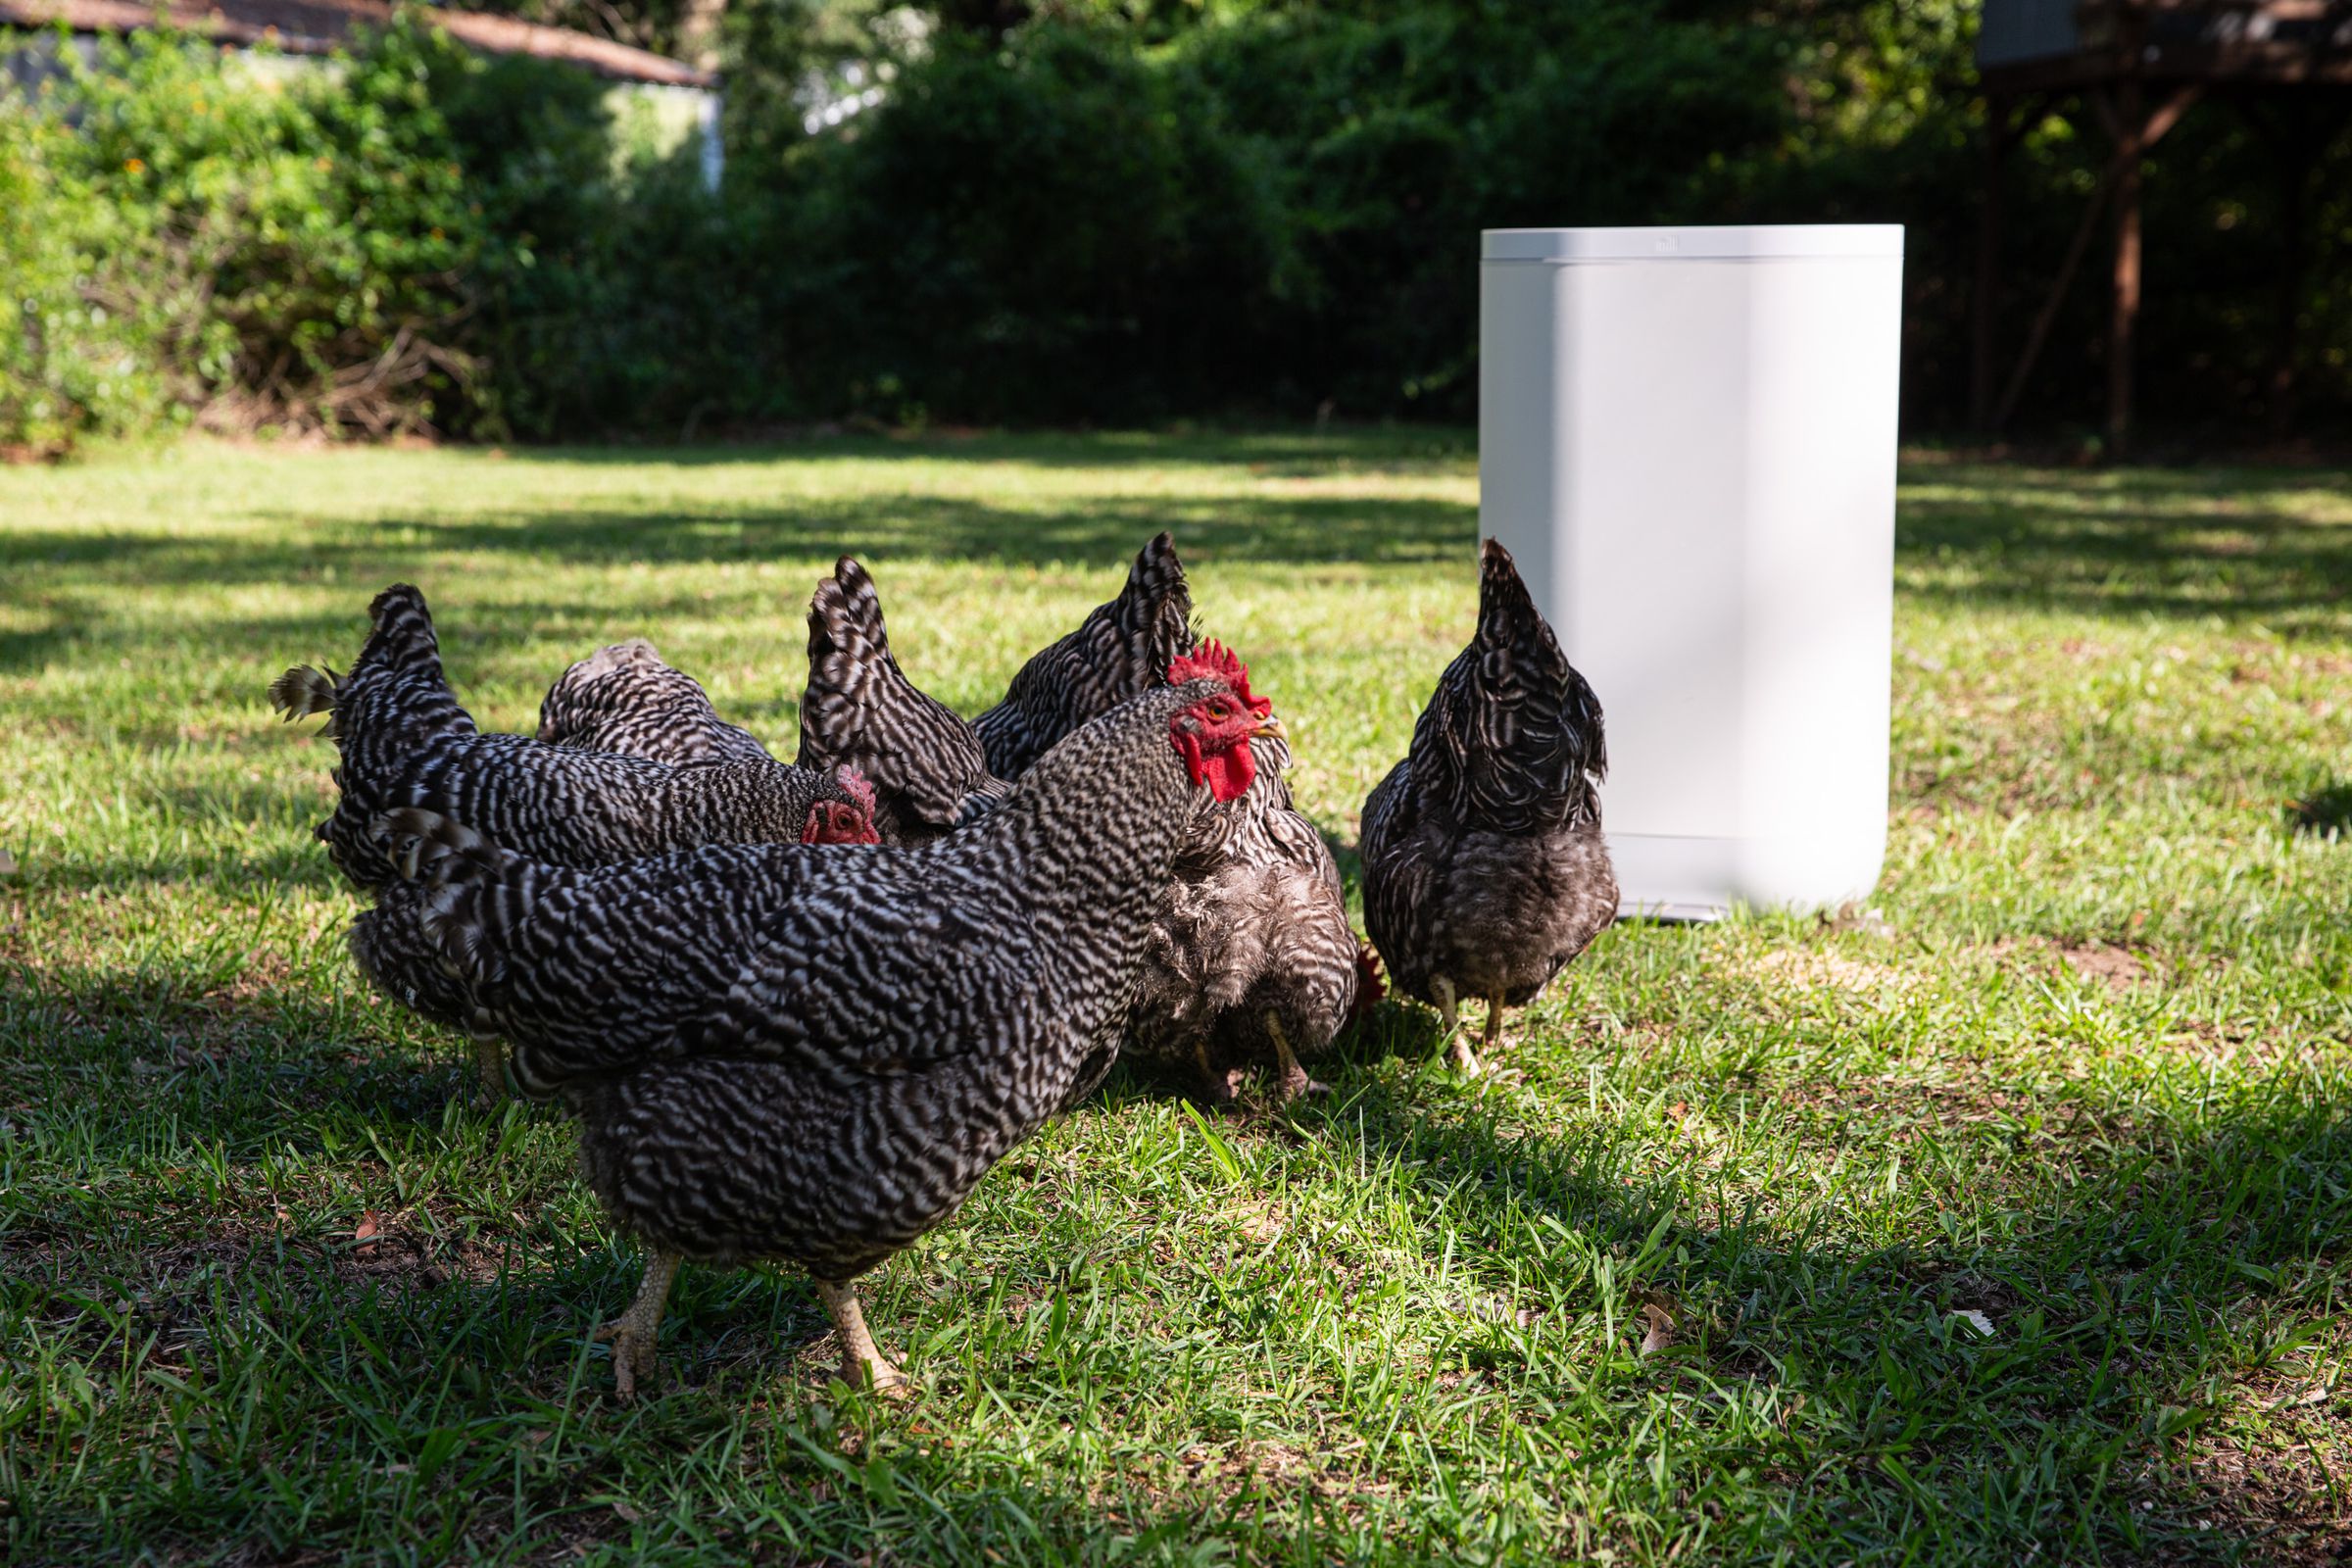 Chickens standing near a white kitchen bin in a garden.